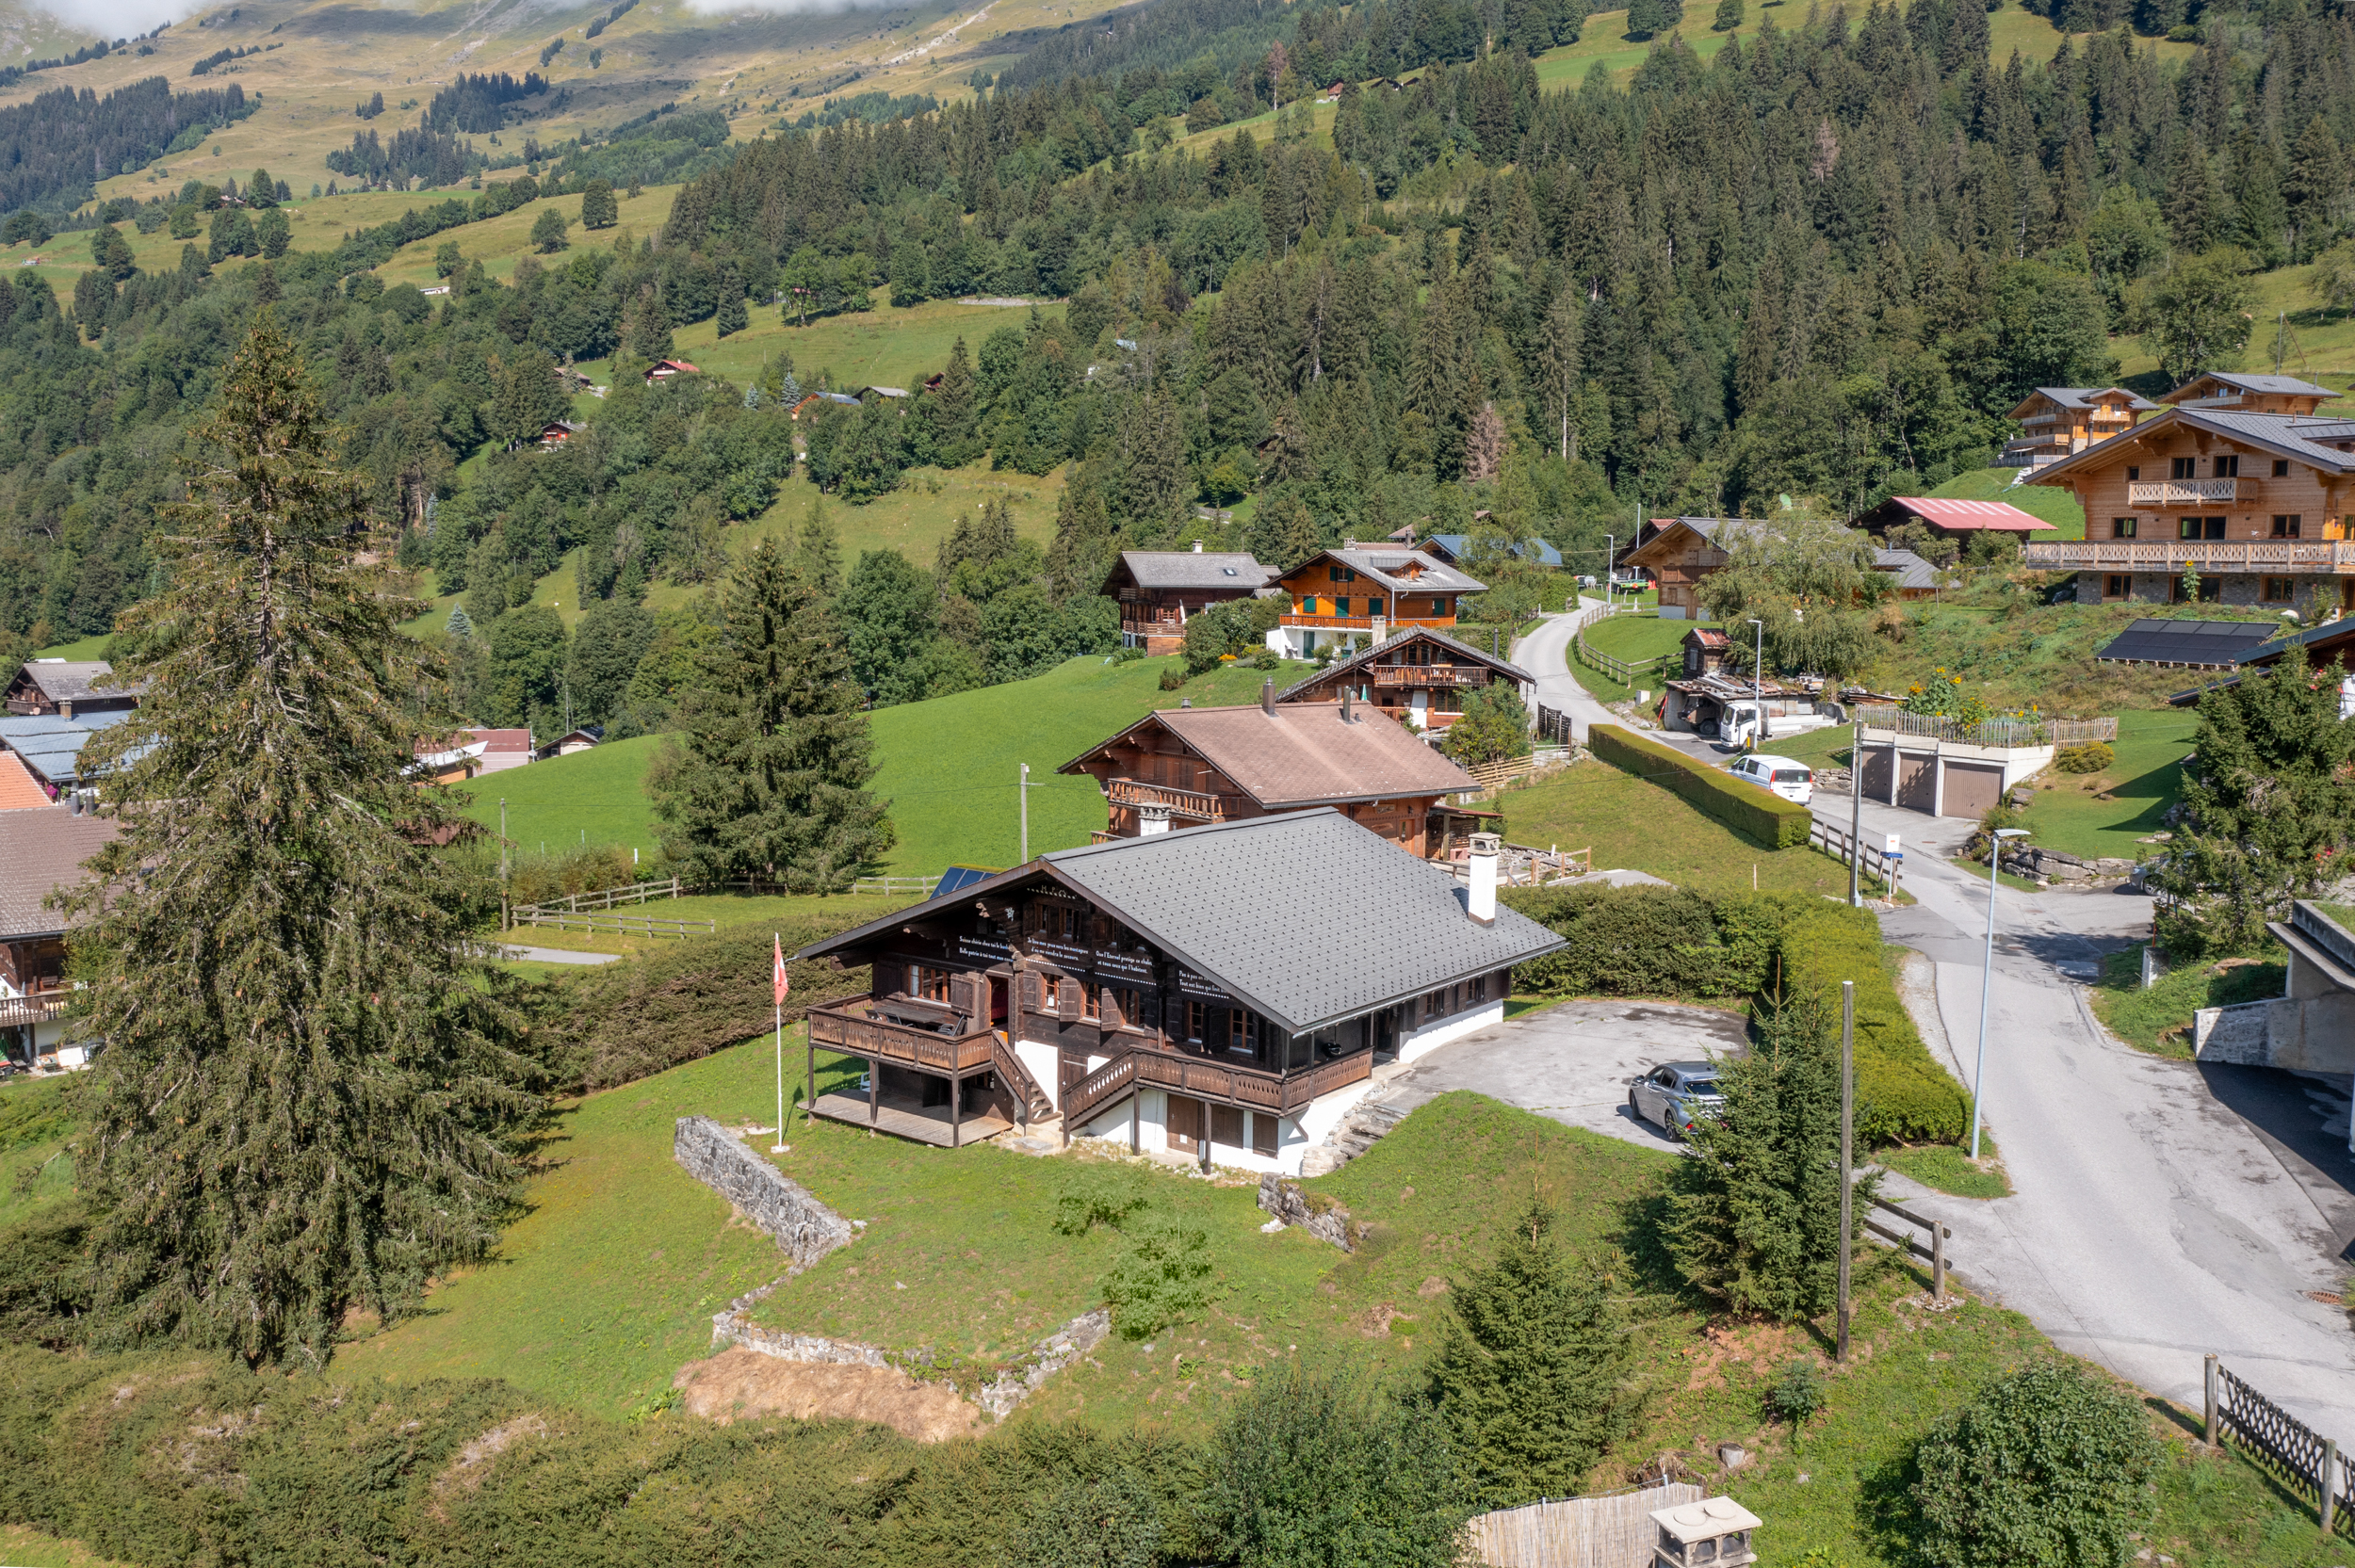 Photographie d'un pittoresque chalet suisse en montagne, mettant en valeur son charme rustique et son cadre naturel époustouflant